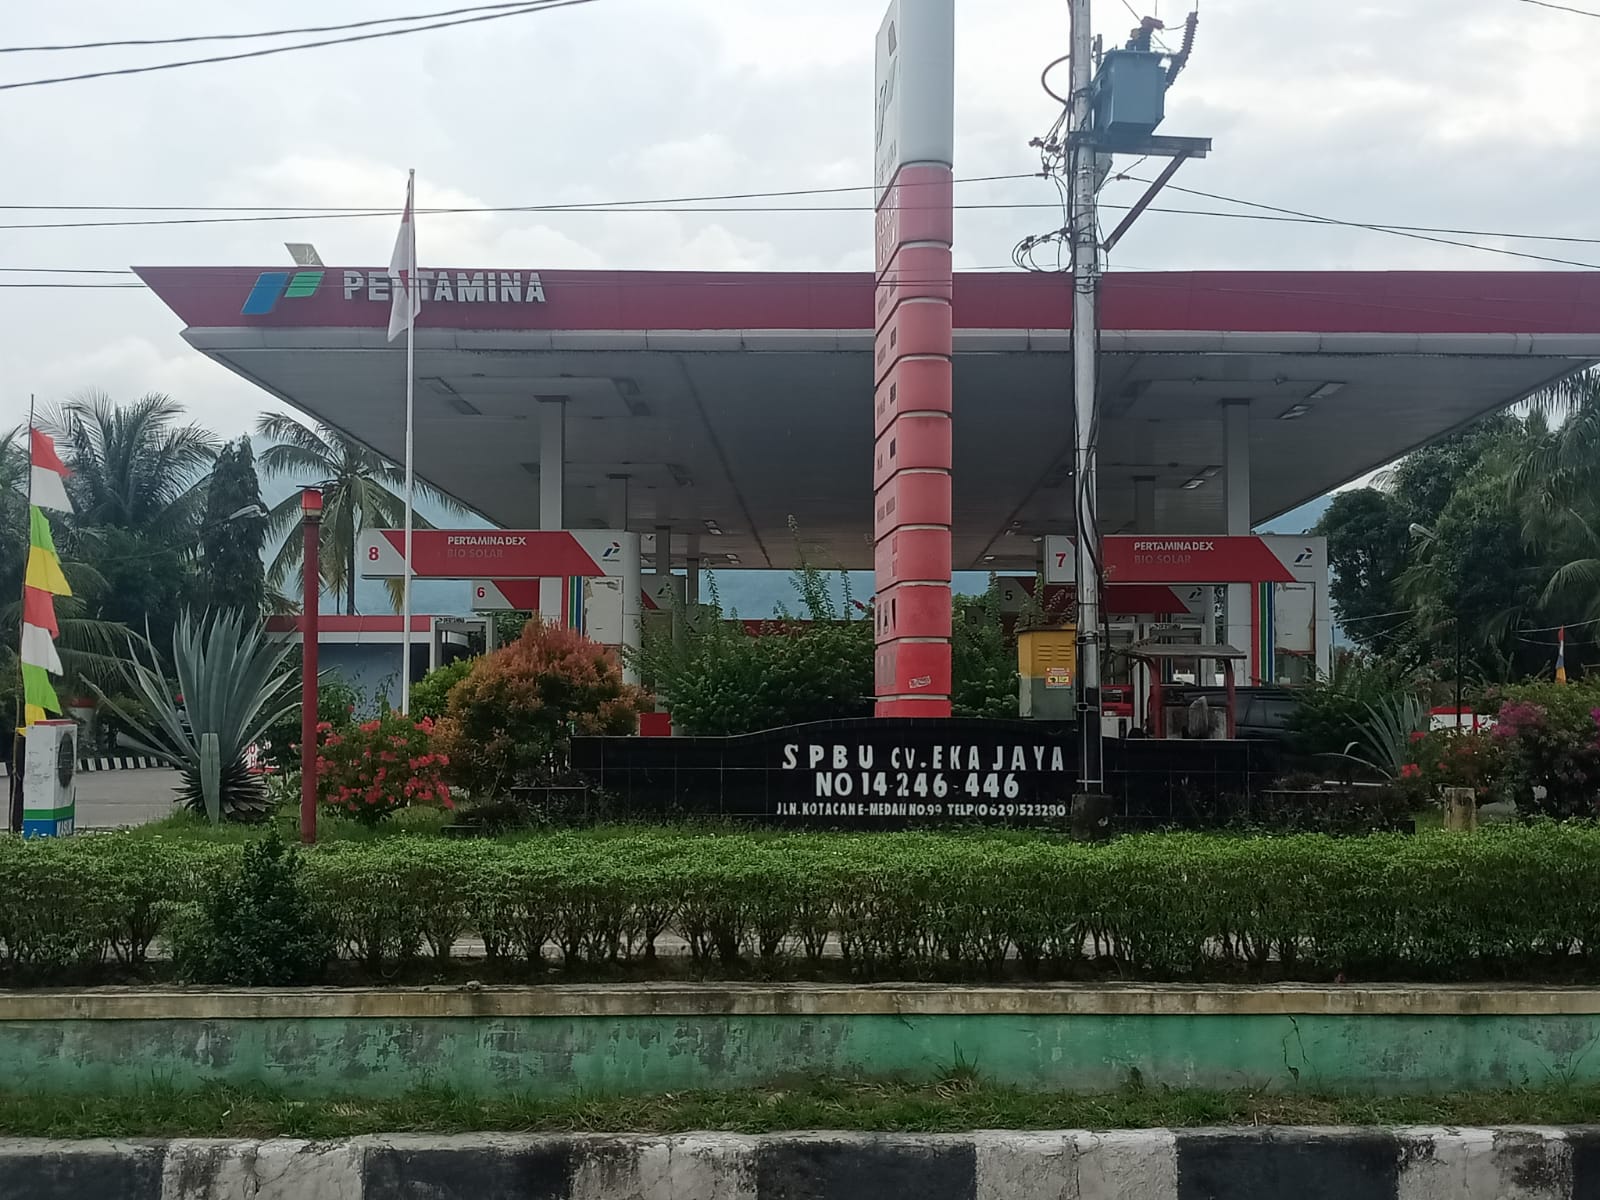 Jual BBM ke Pengecer, Warga Aceh Tenggara Gerebek dan Laporkan Pemilik SPBU ke Polisi